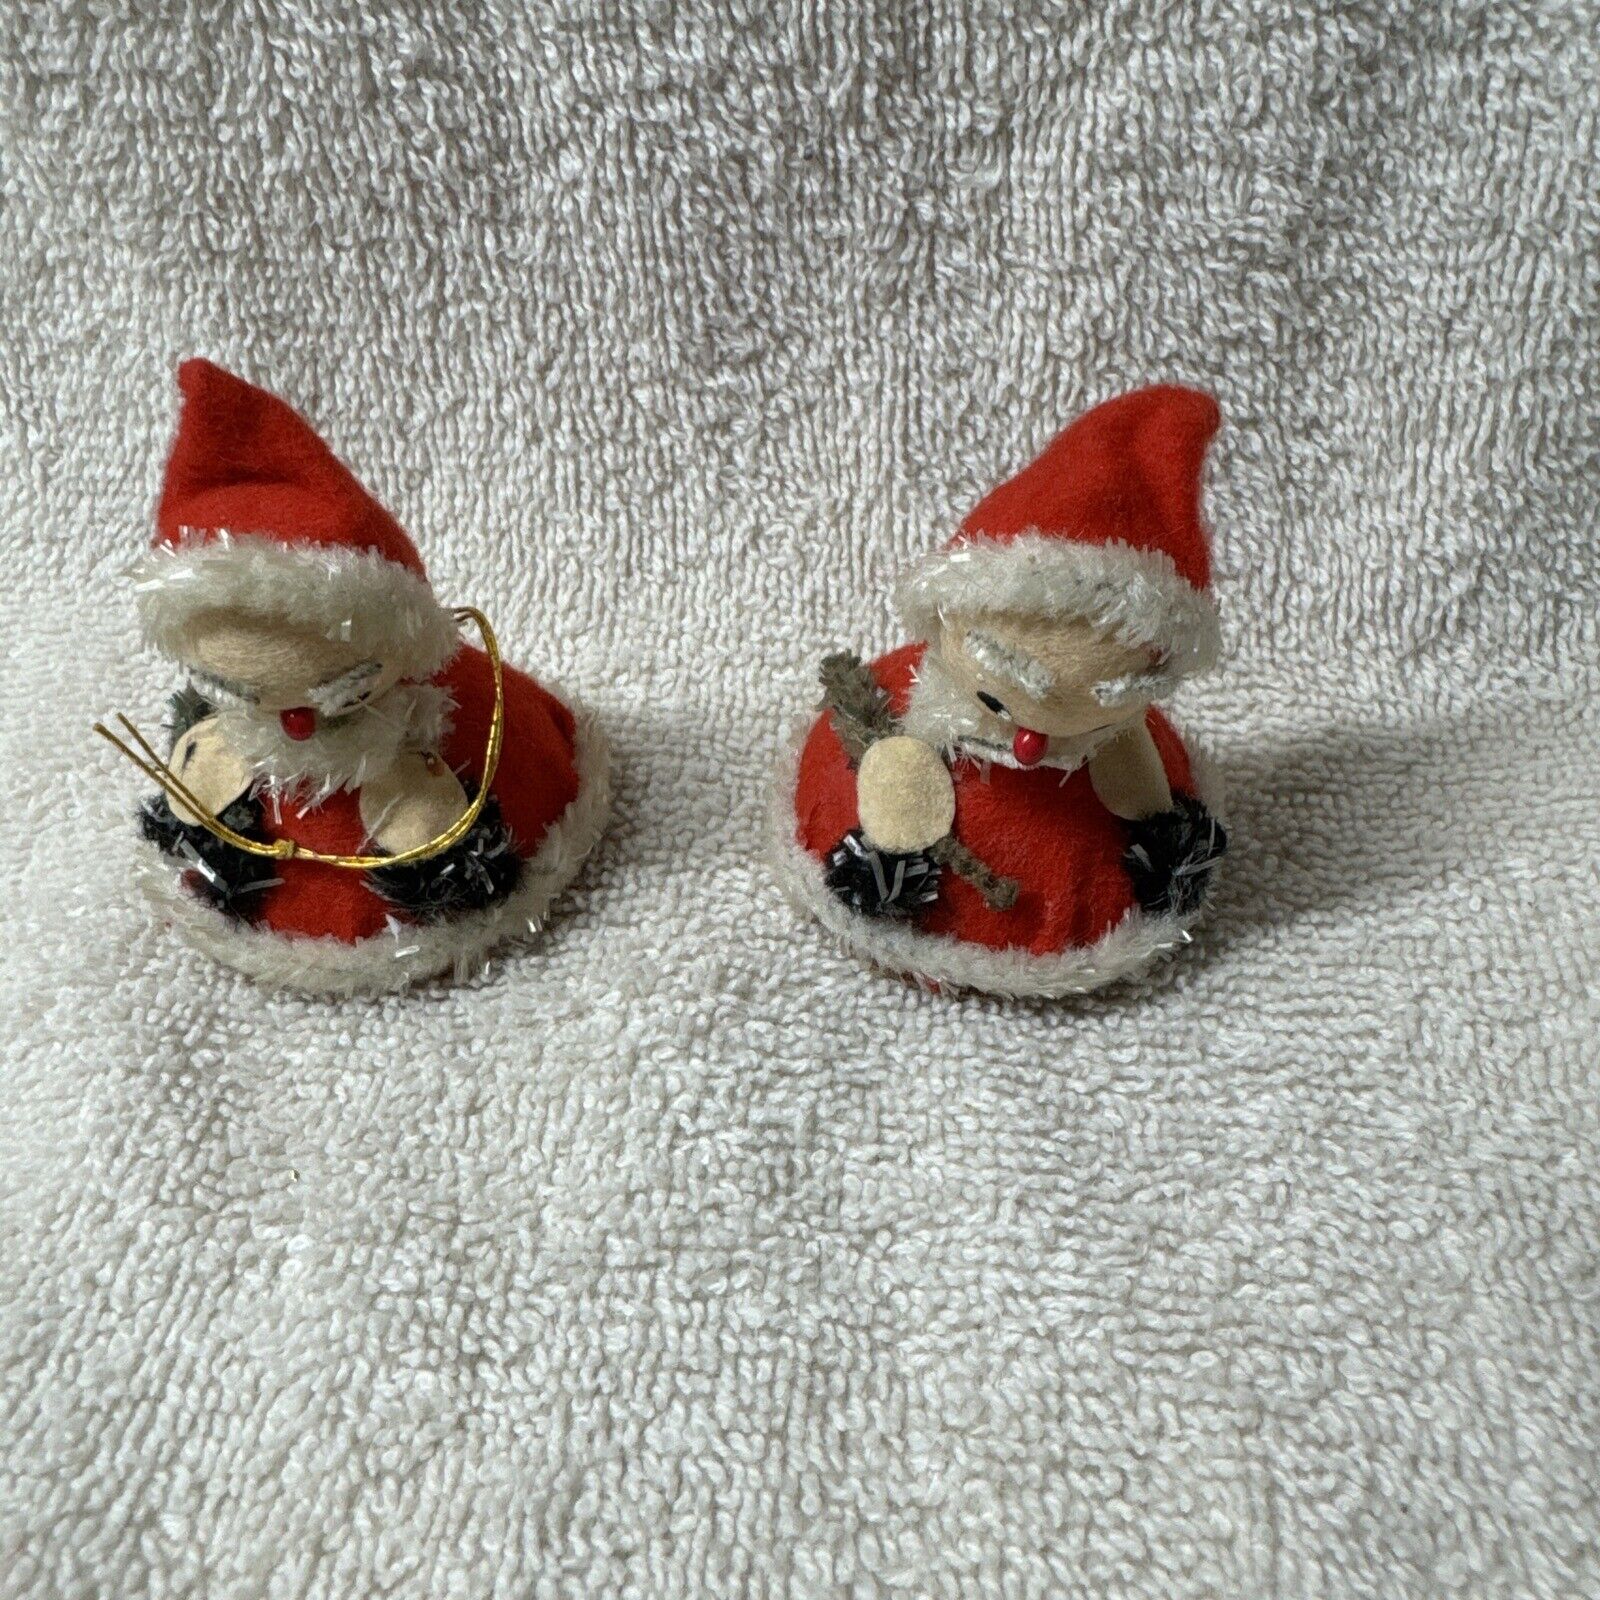 Vintage Spun Cotton/Felt Pixie Christmas Ornaments Lot 2 Japan V36